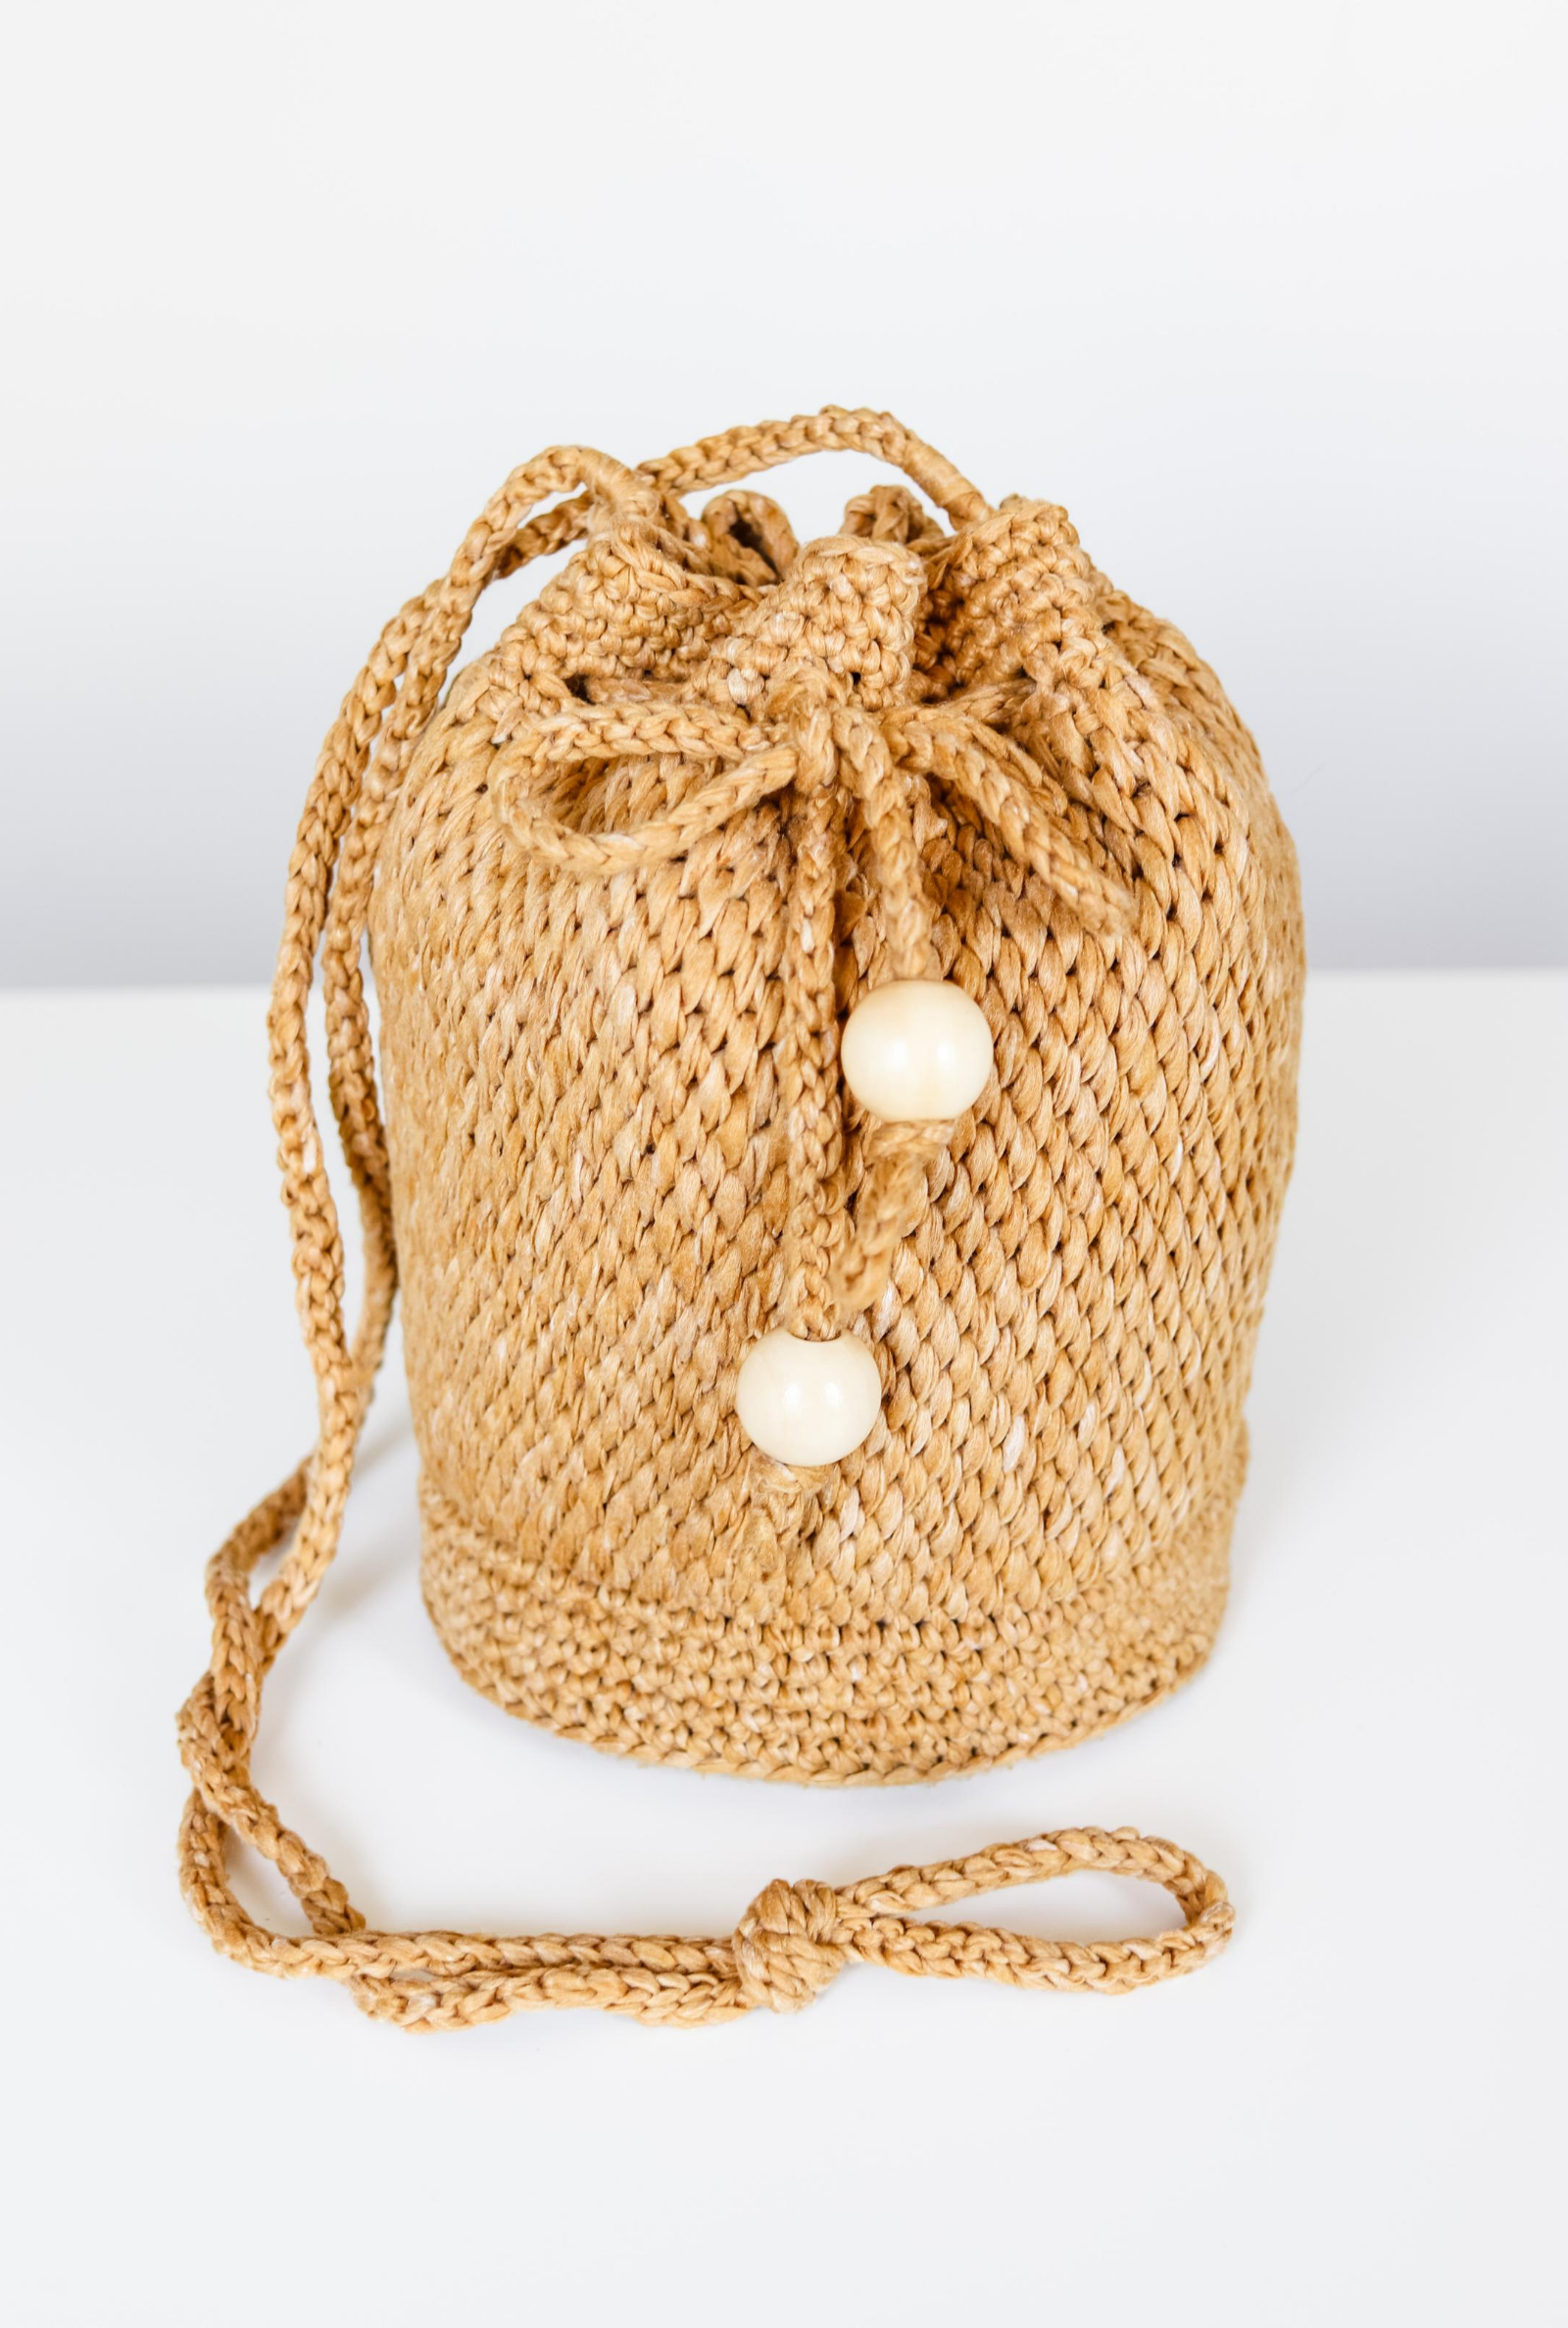 Harper Bucket Bag // Crochet PDF Pattern